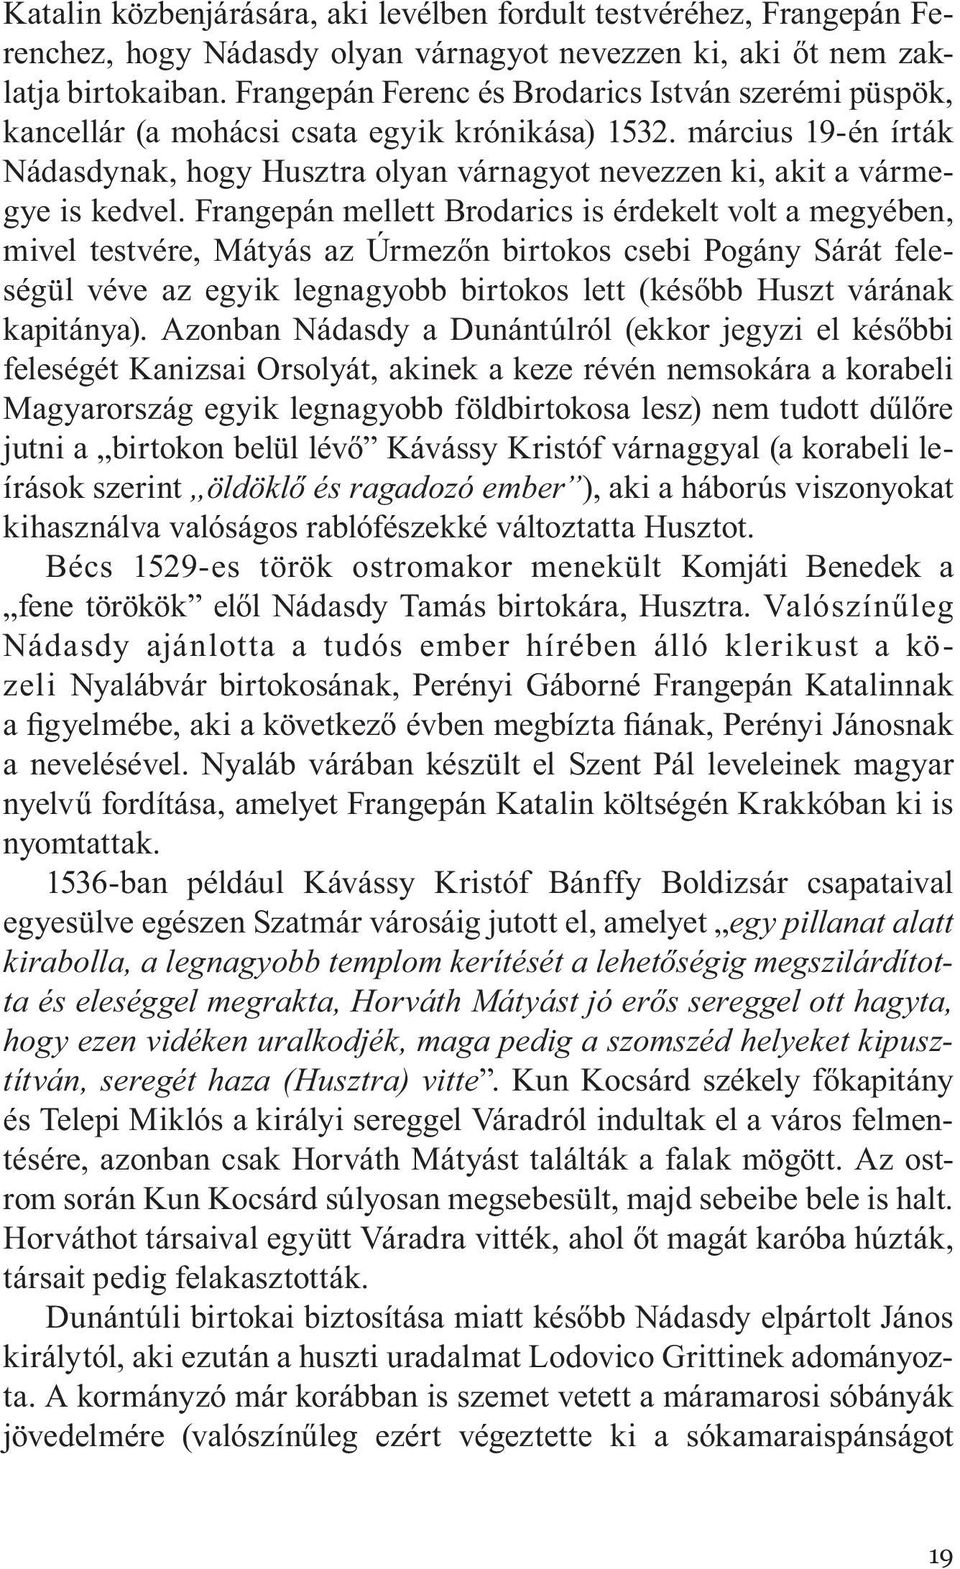 március 19-én írták Nádasdynak, hogy Husztra olyan várnagyot nevezzen ki, akit a vármegye is kedvel.